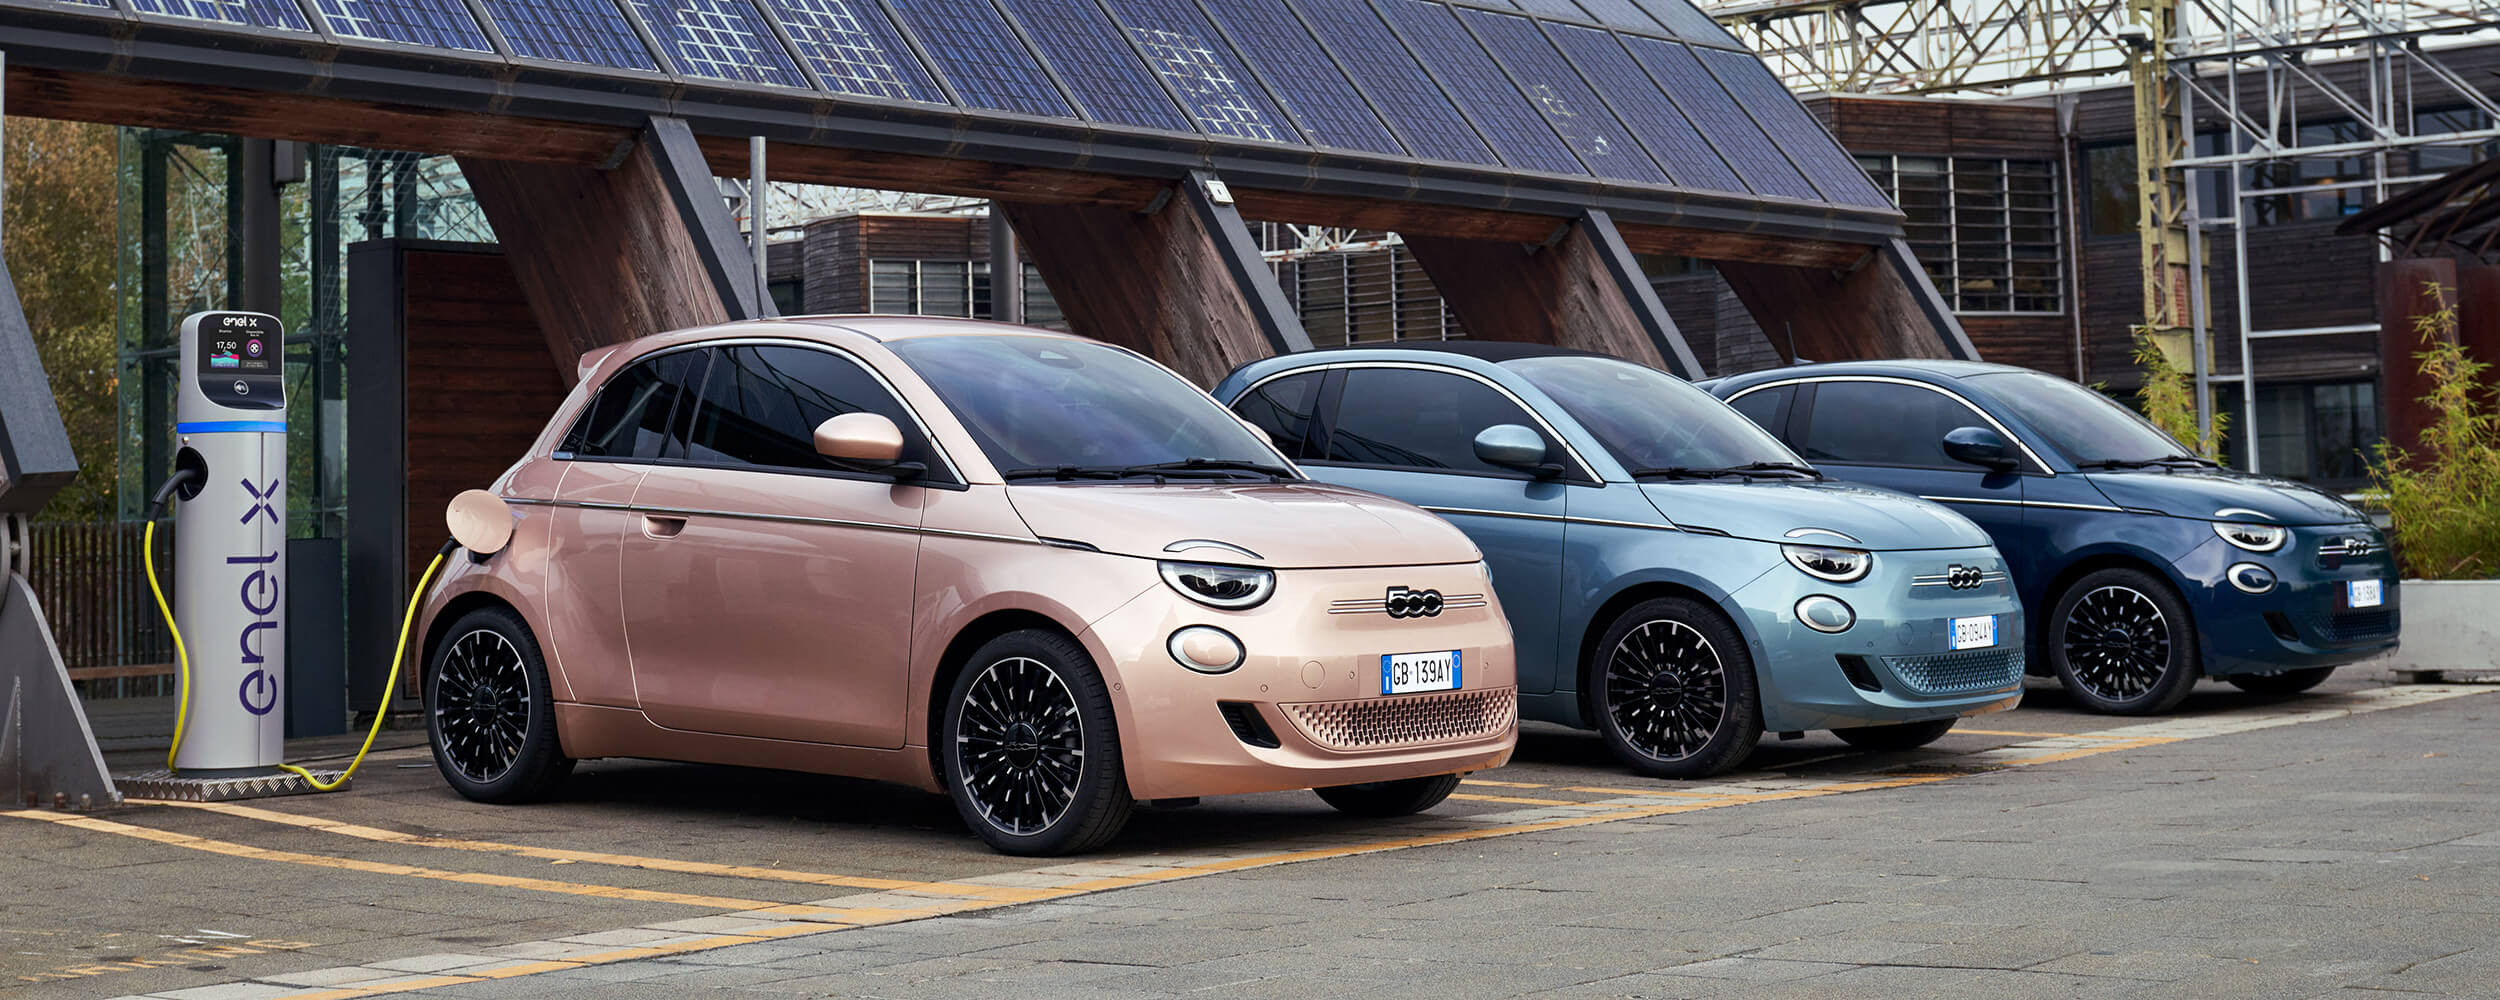 Fiat modeller flere farver